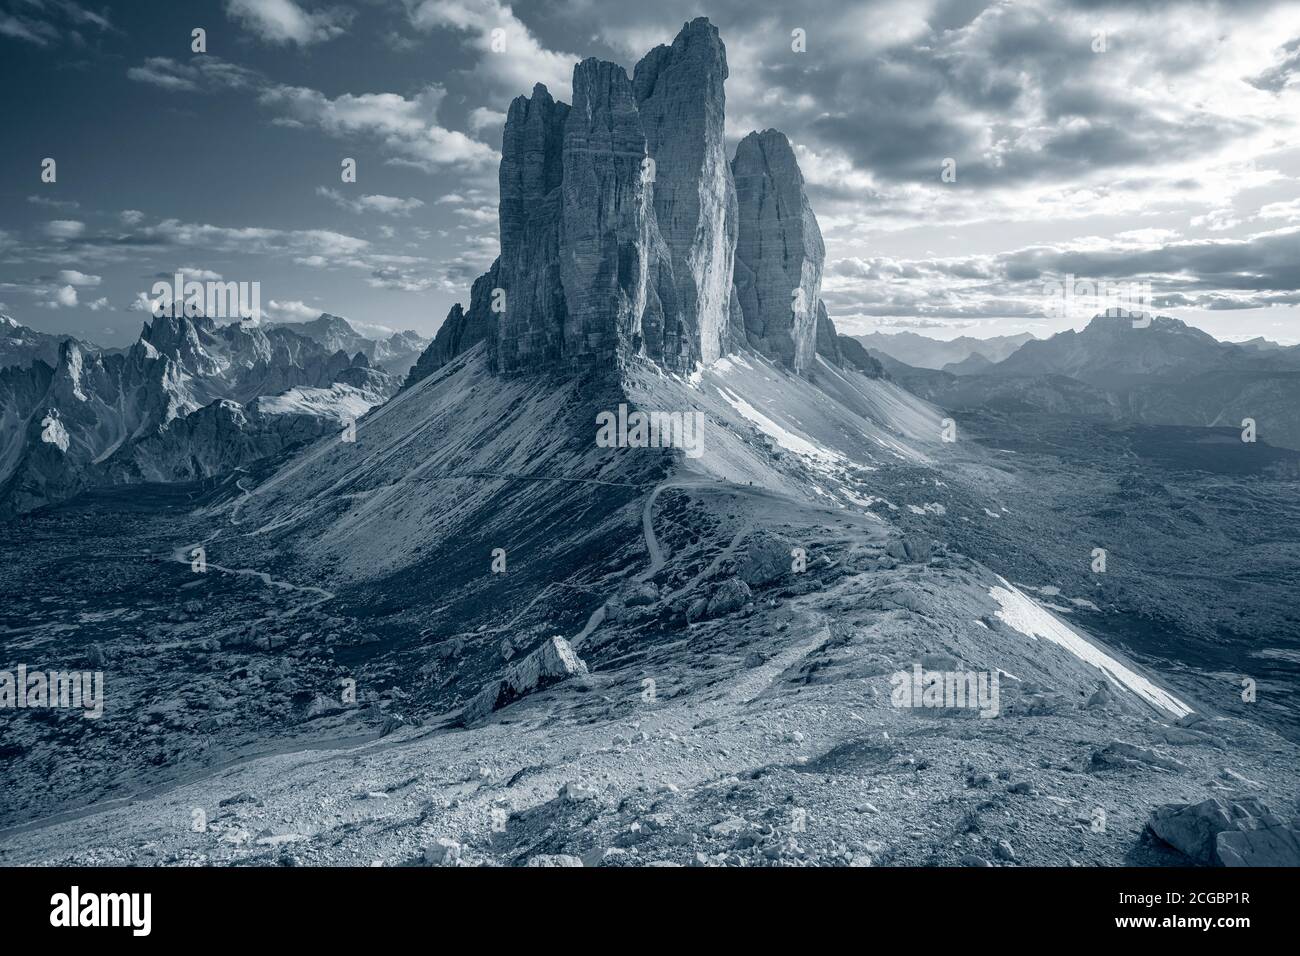 Tre cime di Lavaredo. Immagine tonica delle Dolomiti italiane con le famose tre cime di Lavaredo (tre Cime di Lavaredo) Alto Adige, Italia, Europa. Foto Stock